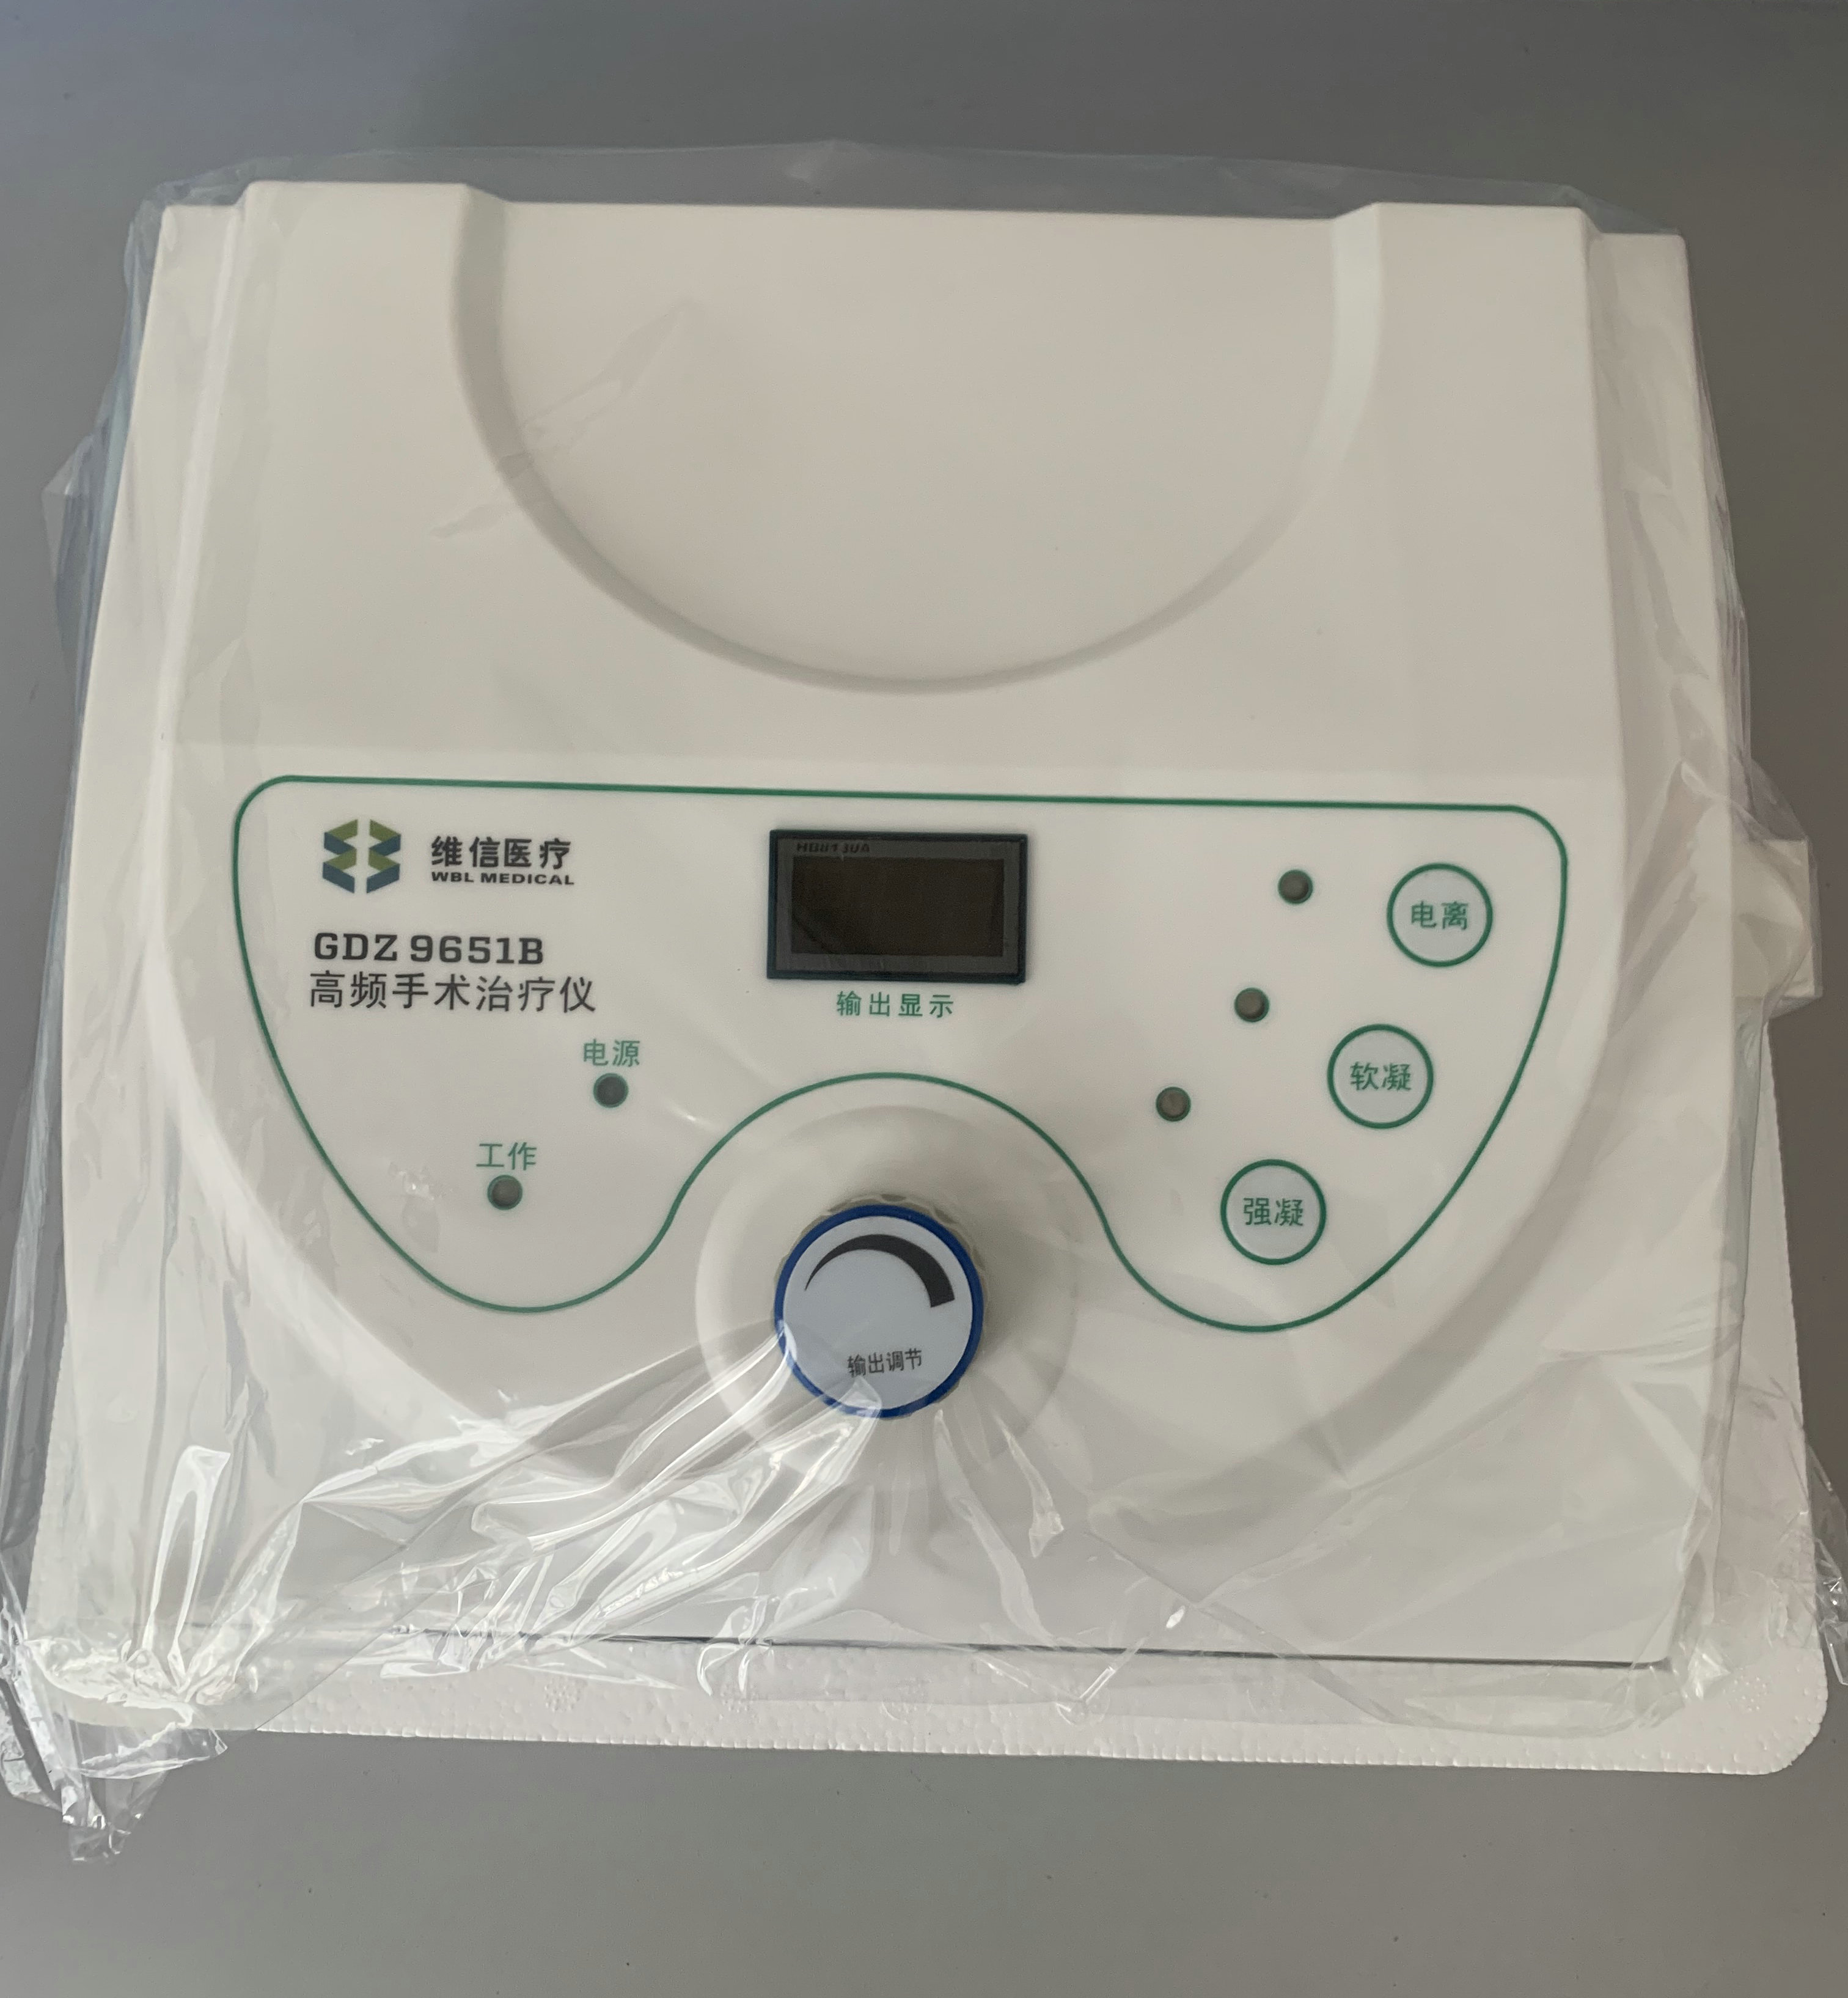 维信医疗电刀电凝器GDZ9651B高频手术治疗仪